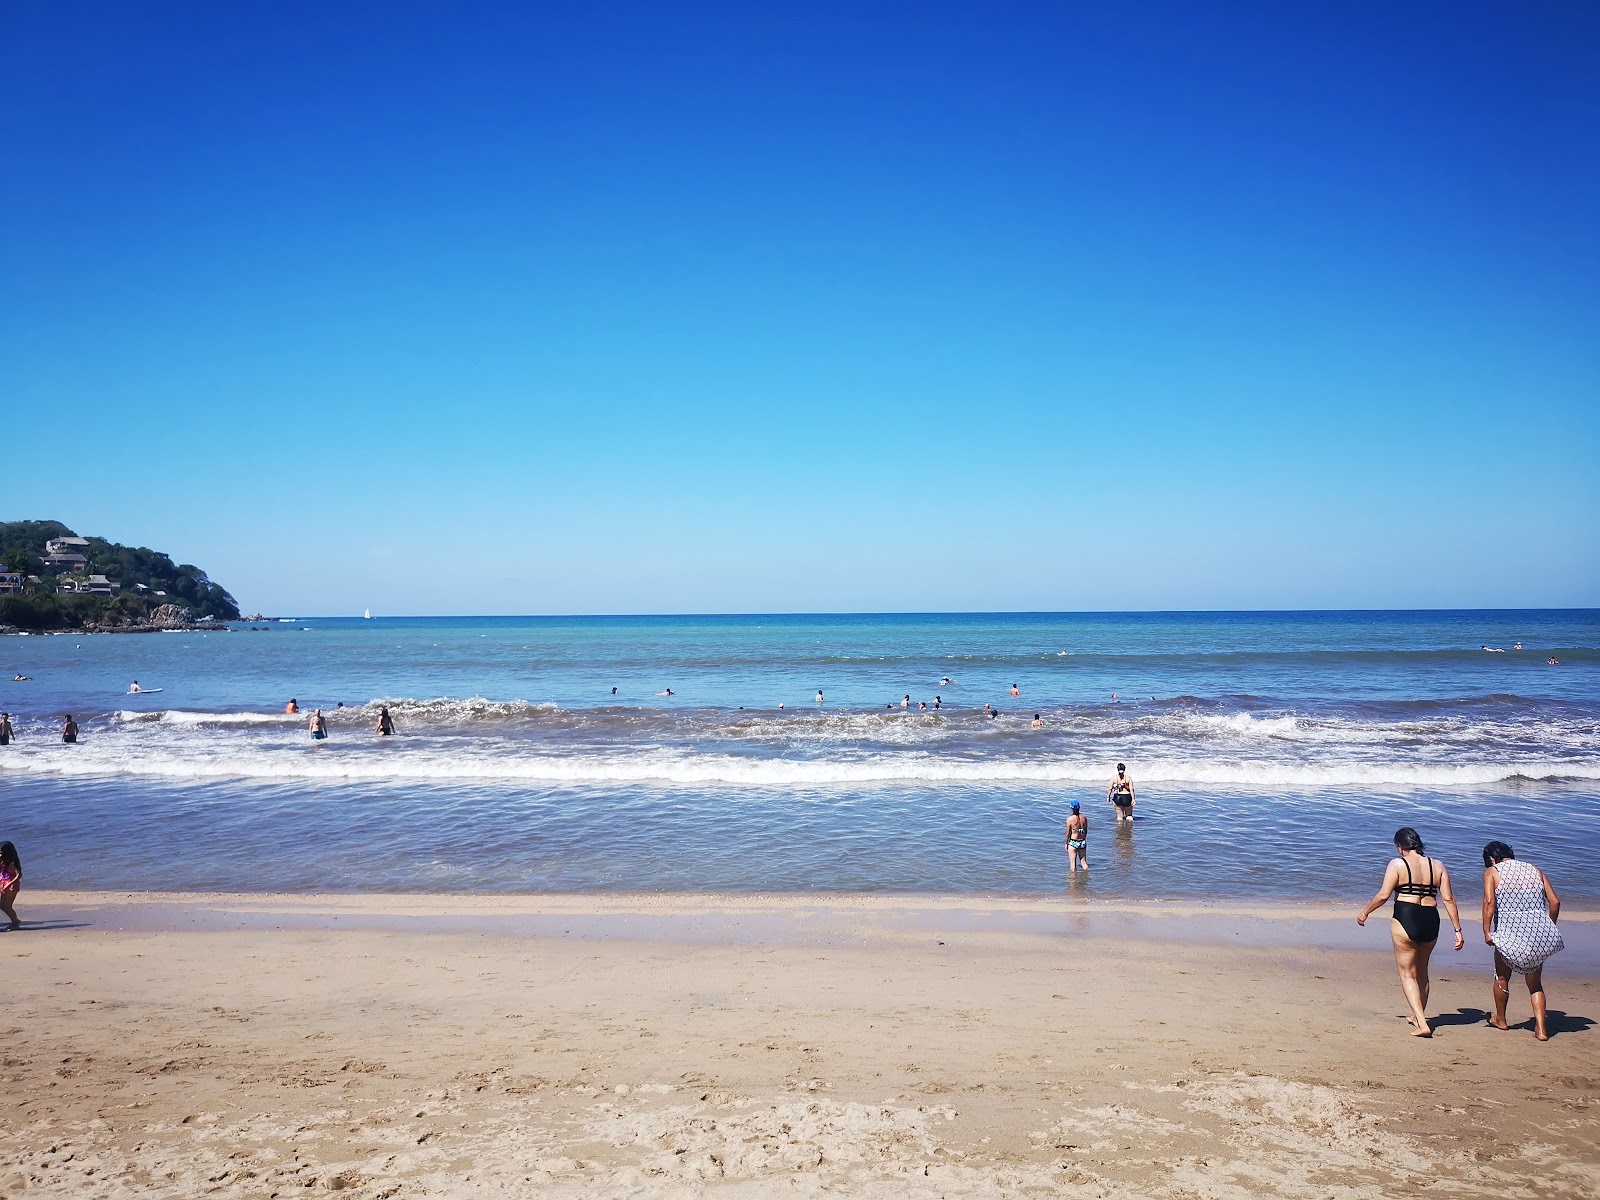 Sayulita beach的照片 带有蓝色纯水表面